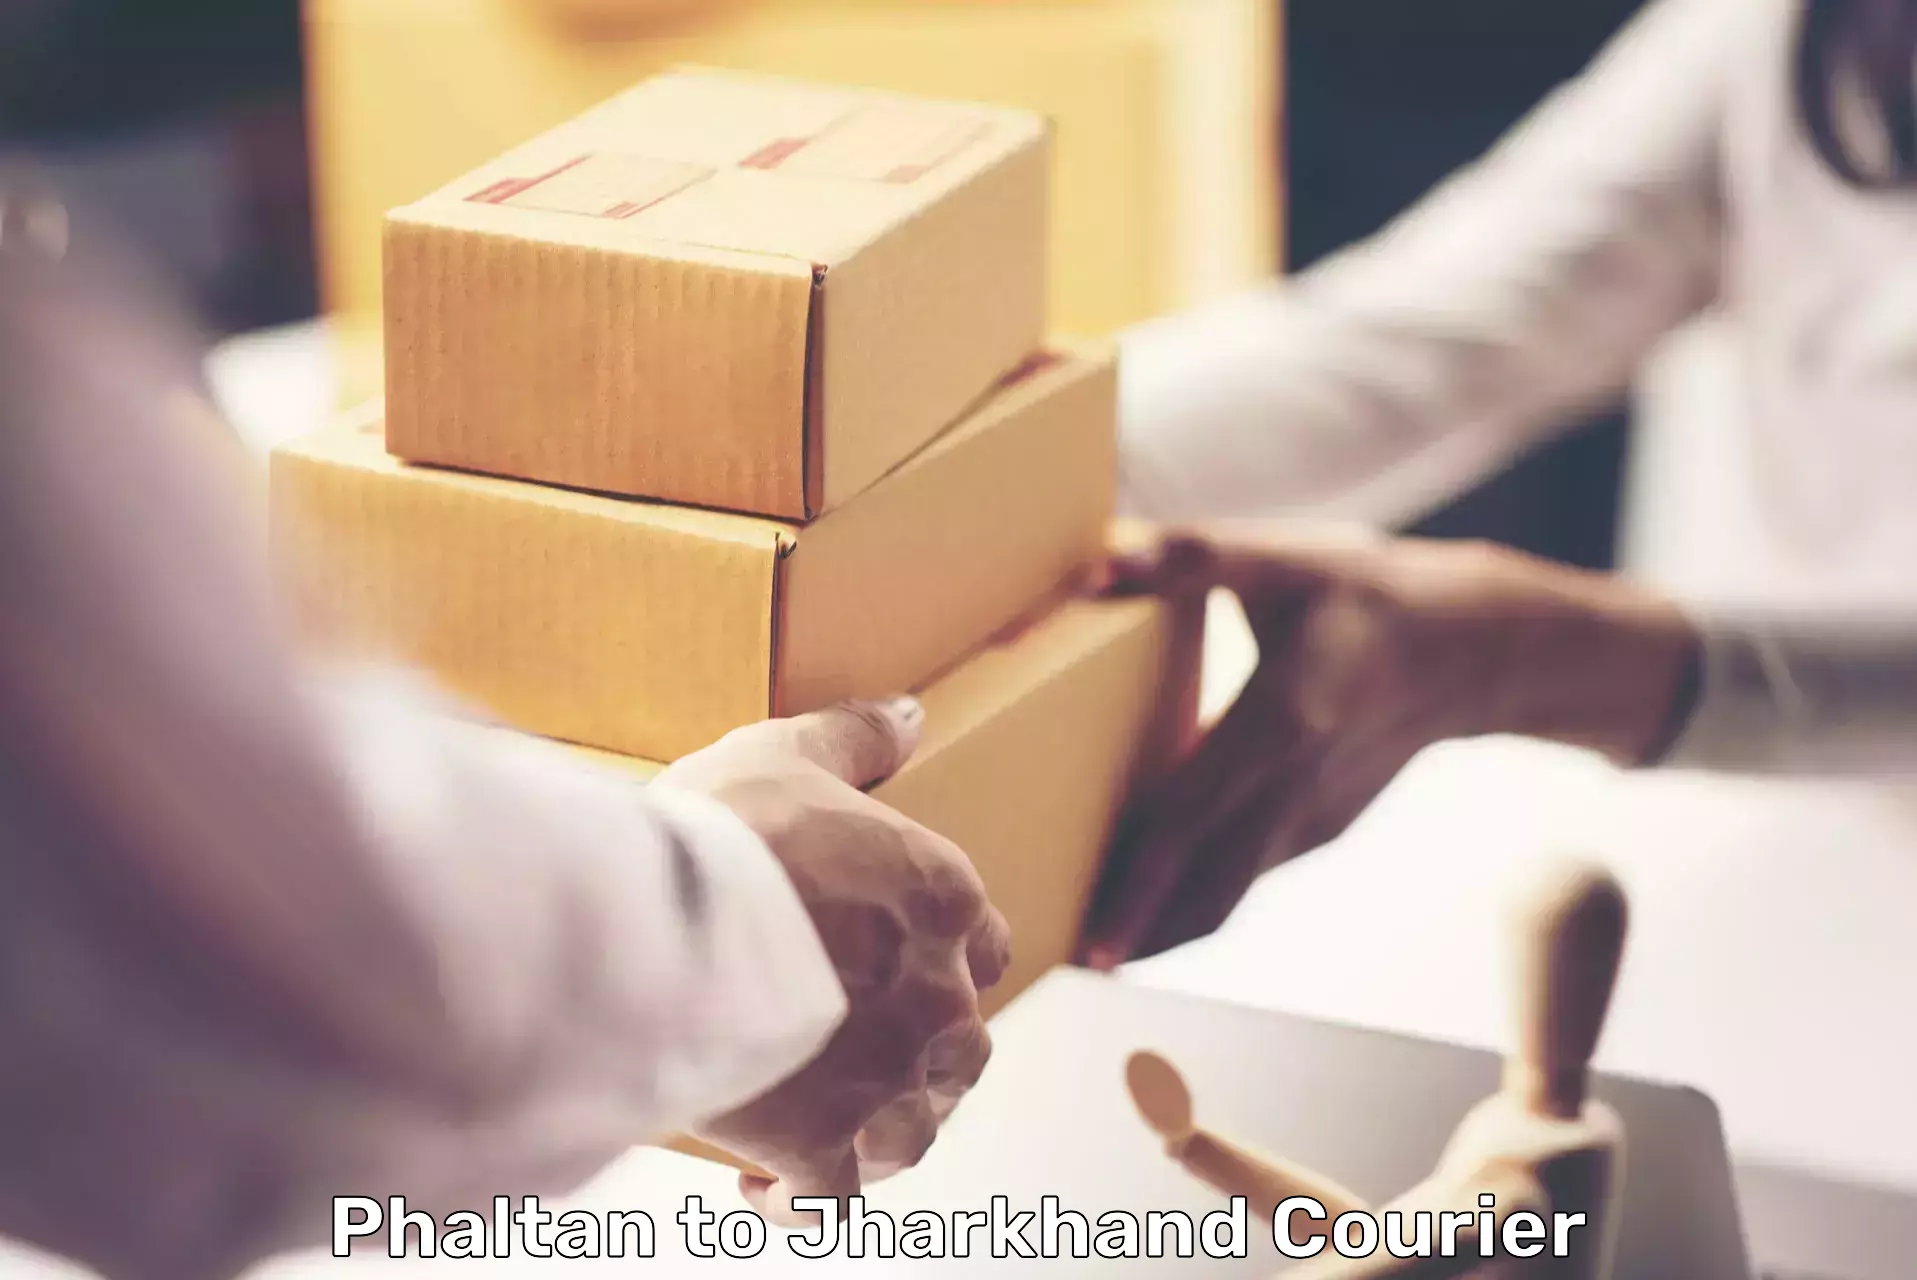 Efficient parcel service in Phaltan to Koderma